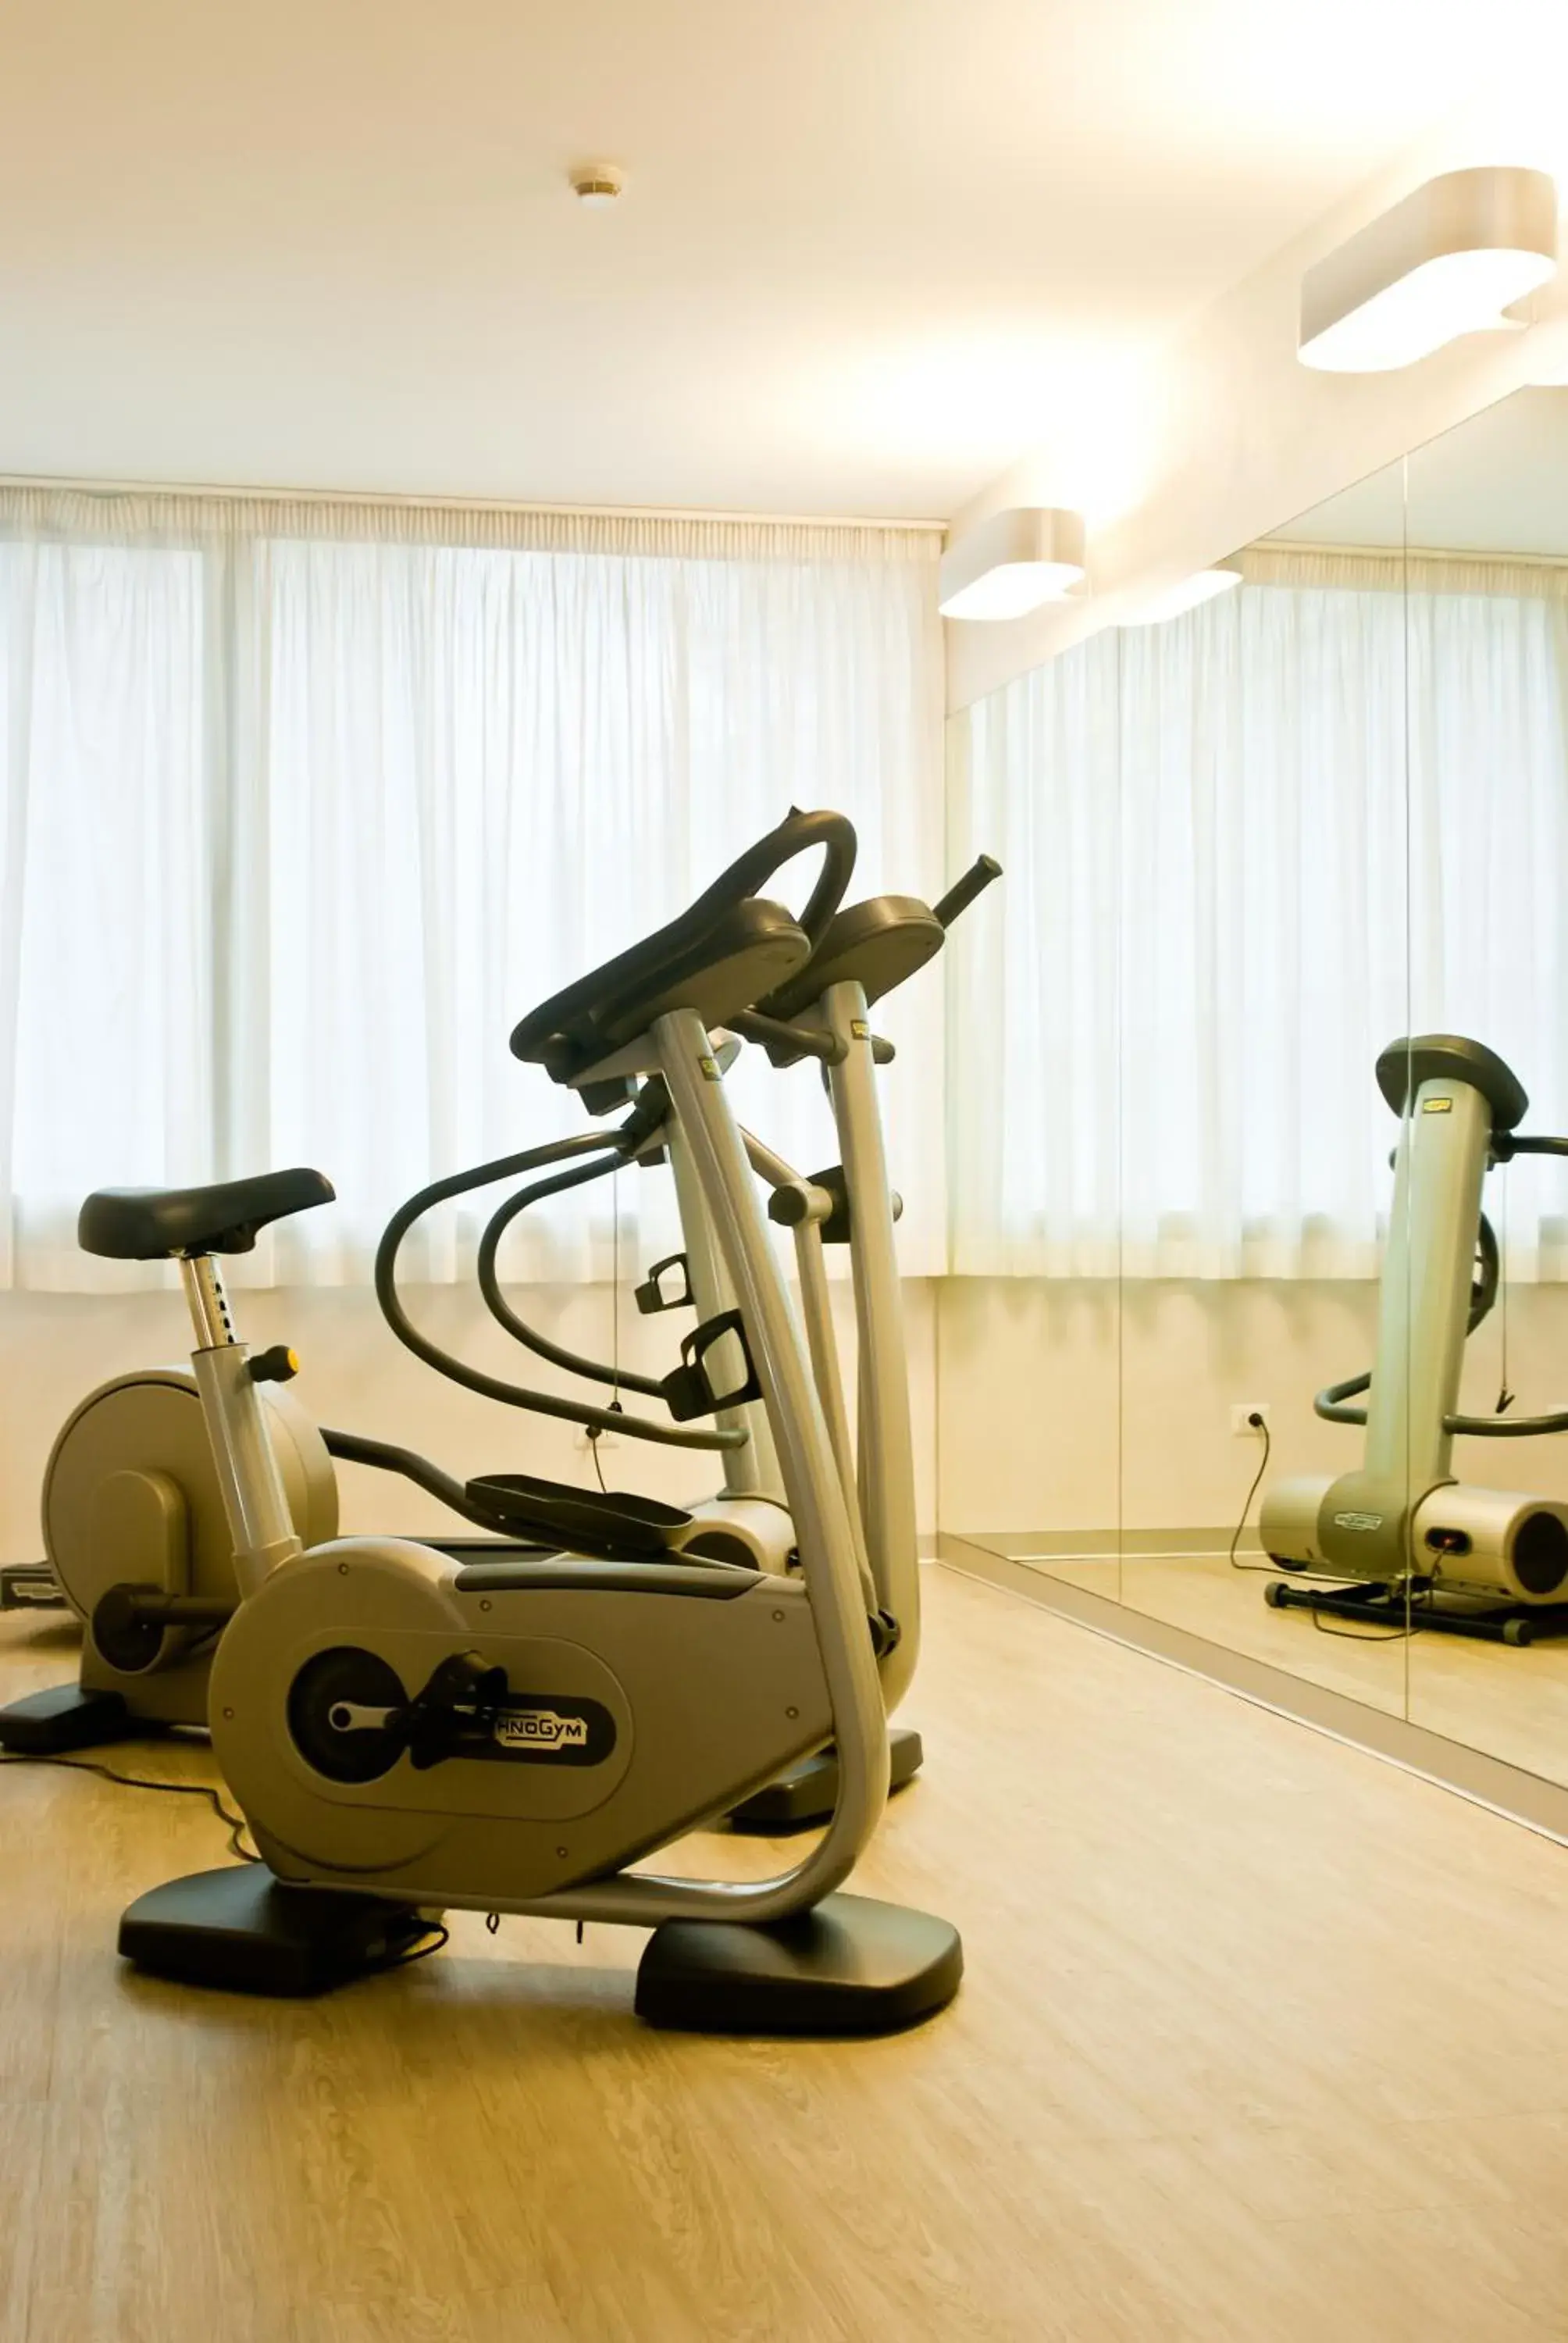 Fitness centre/facilities, Fitness Center/Facilities in Hotel Raffaello